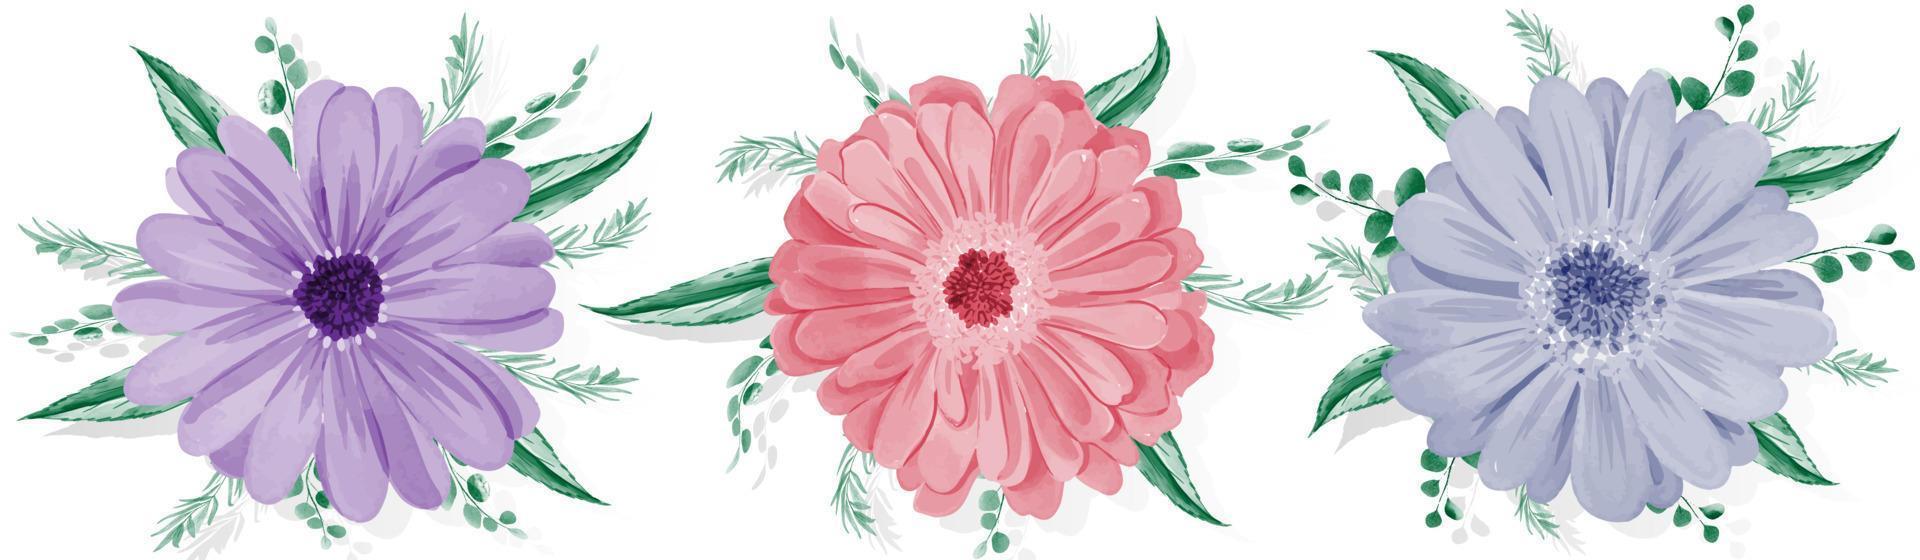 Satz von Gerbera-Gänseblümchen-Blume auf weißem Hintergrund vektor